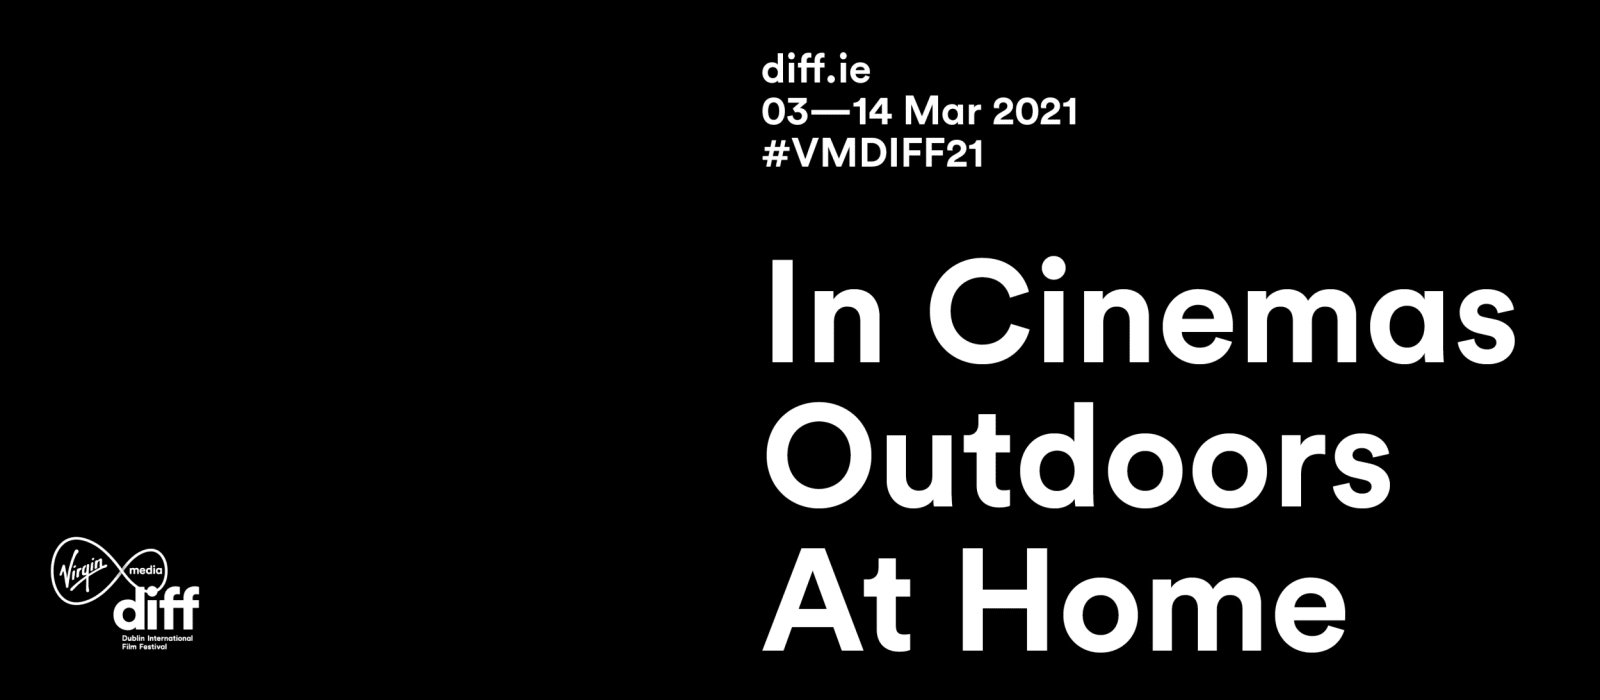 Virgin Media Dublin International Film Festival 2021